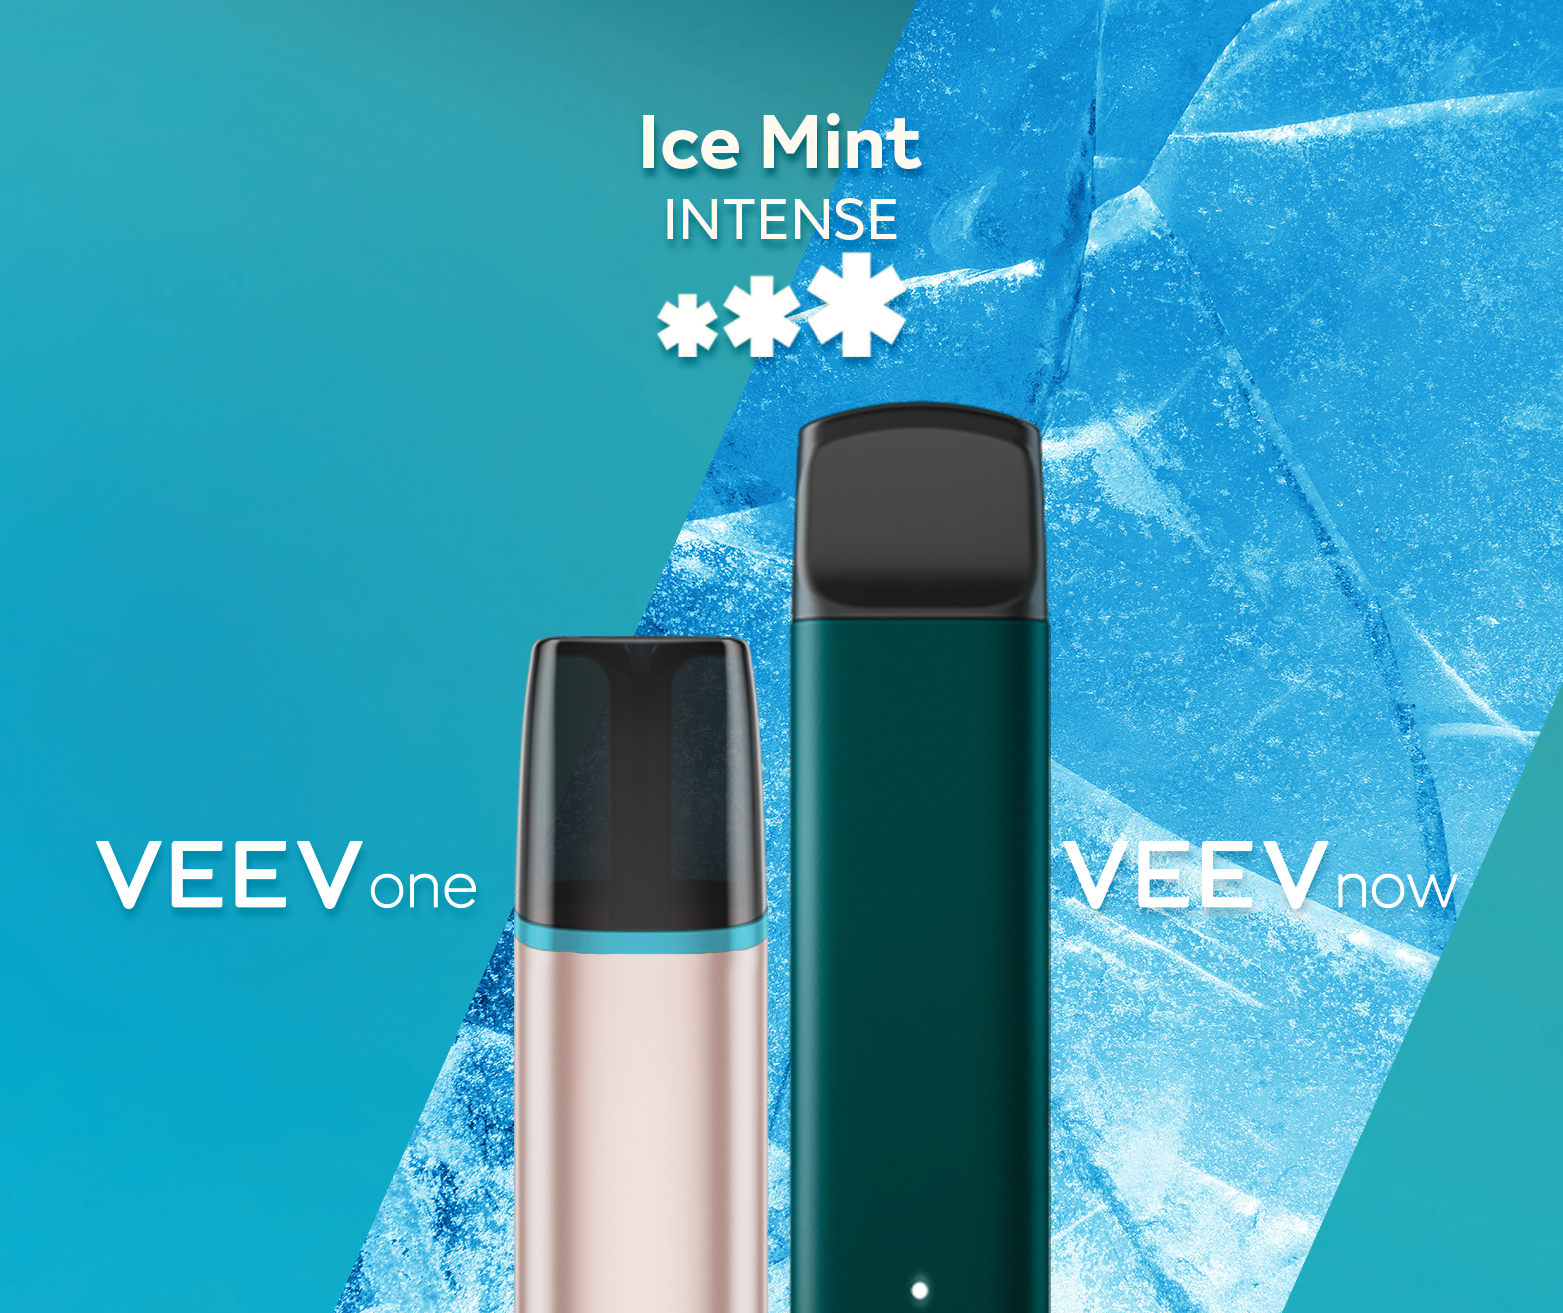 Un appareil à capsule VEEV ONE et un appareil jetable VEEV NOW, tous deux en saveur Ice Mint.